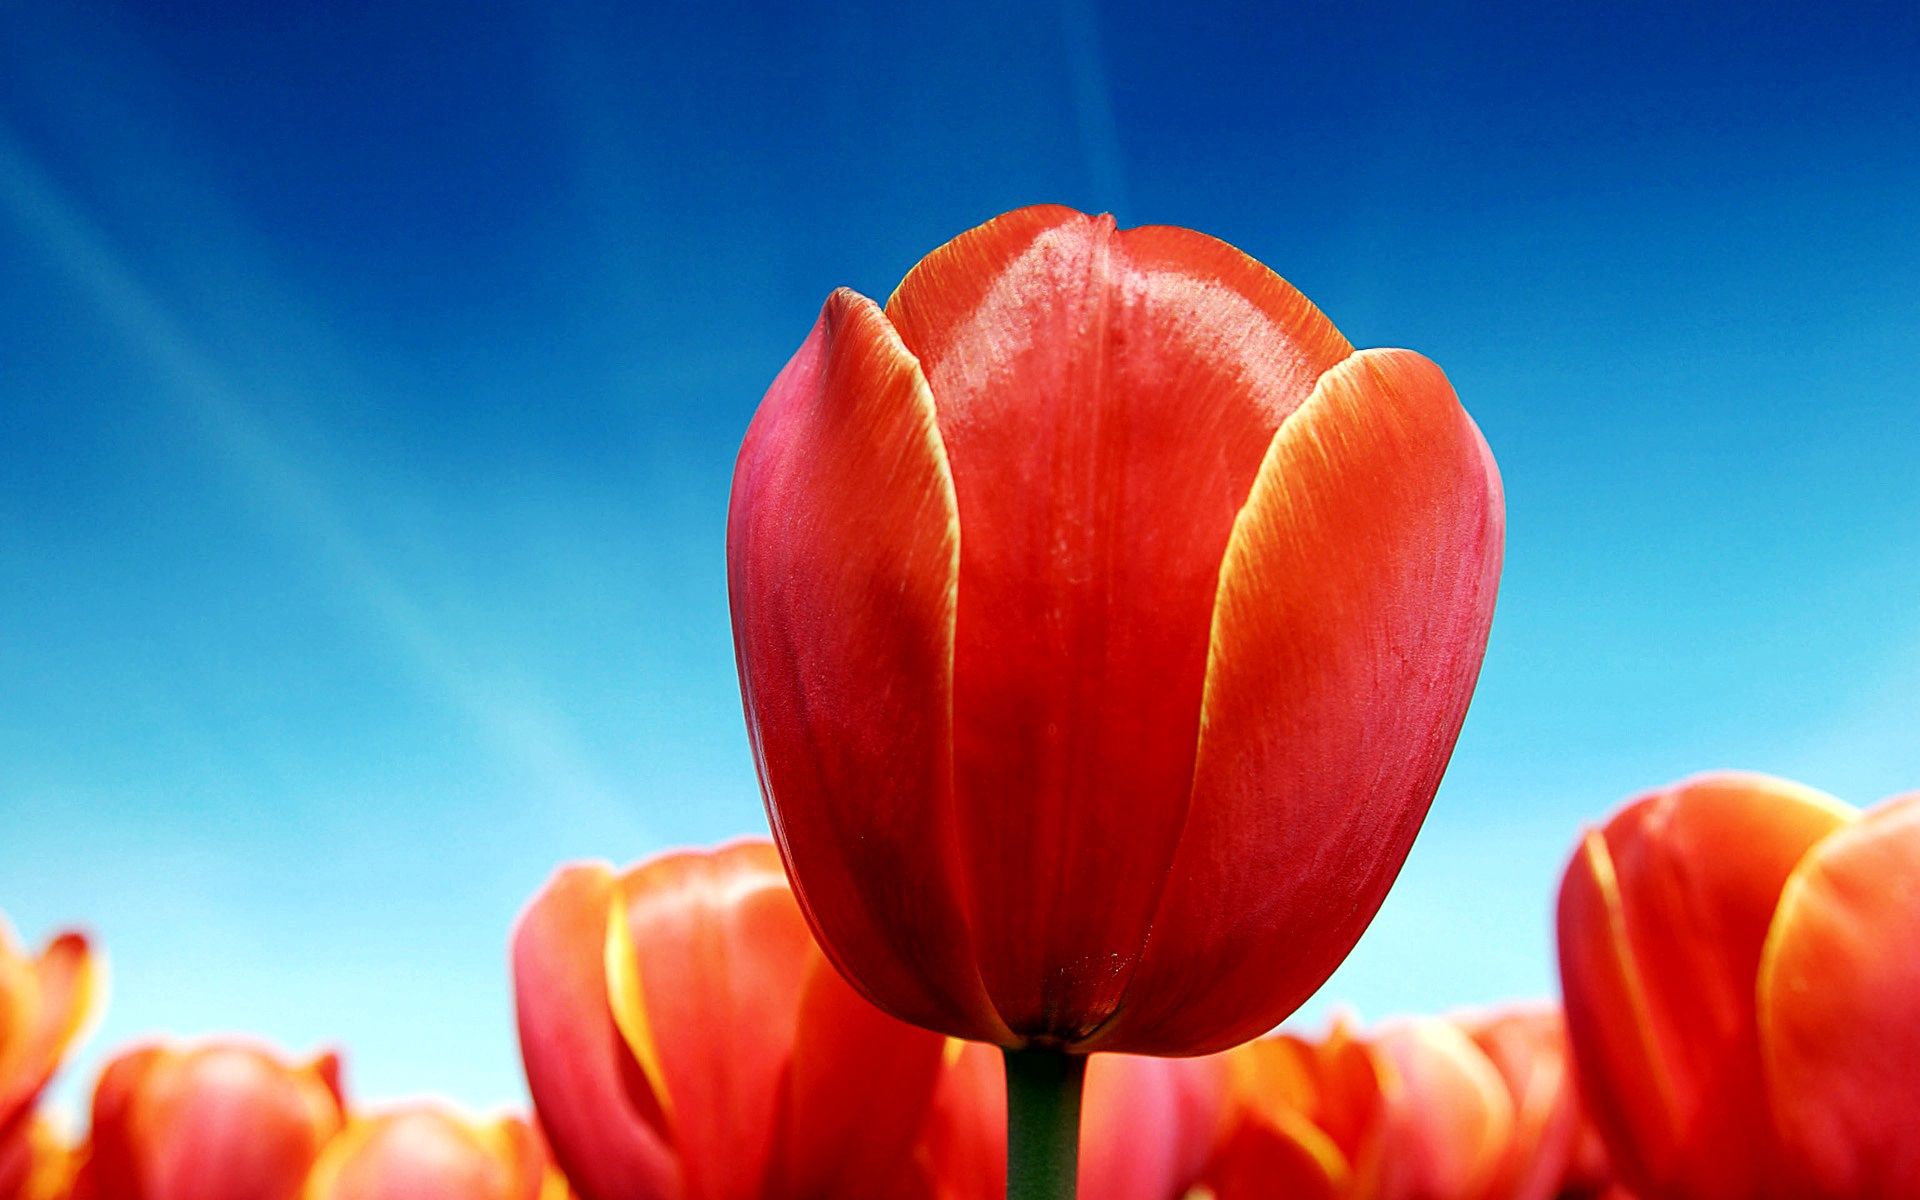 148728 économiseurs d'écran et fonds d'écran Tulipes sur votre téléphone. Téléchargez brillamment, ensoleillé, sky, fleurs images gratuitement